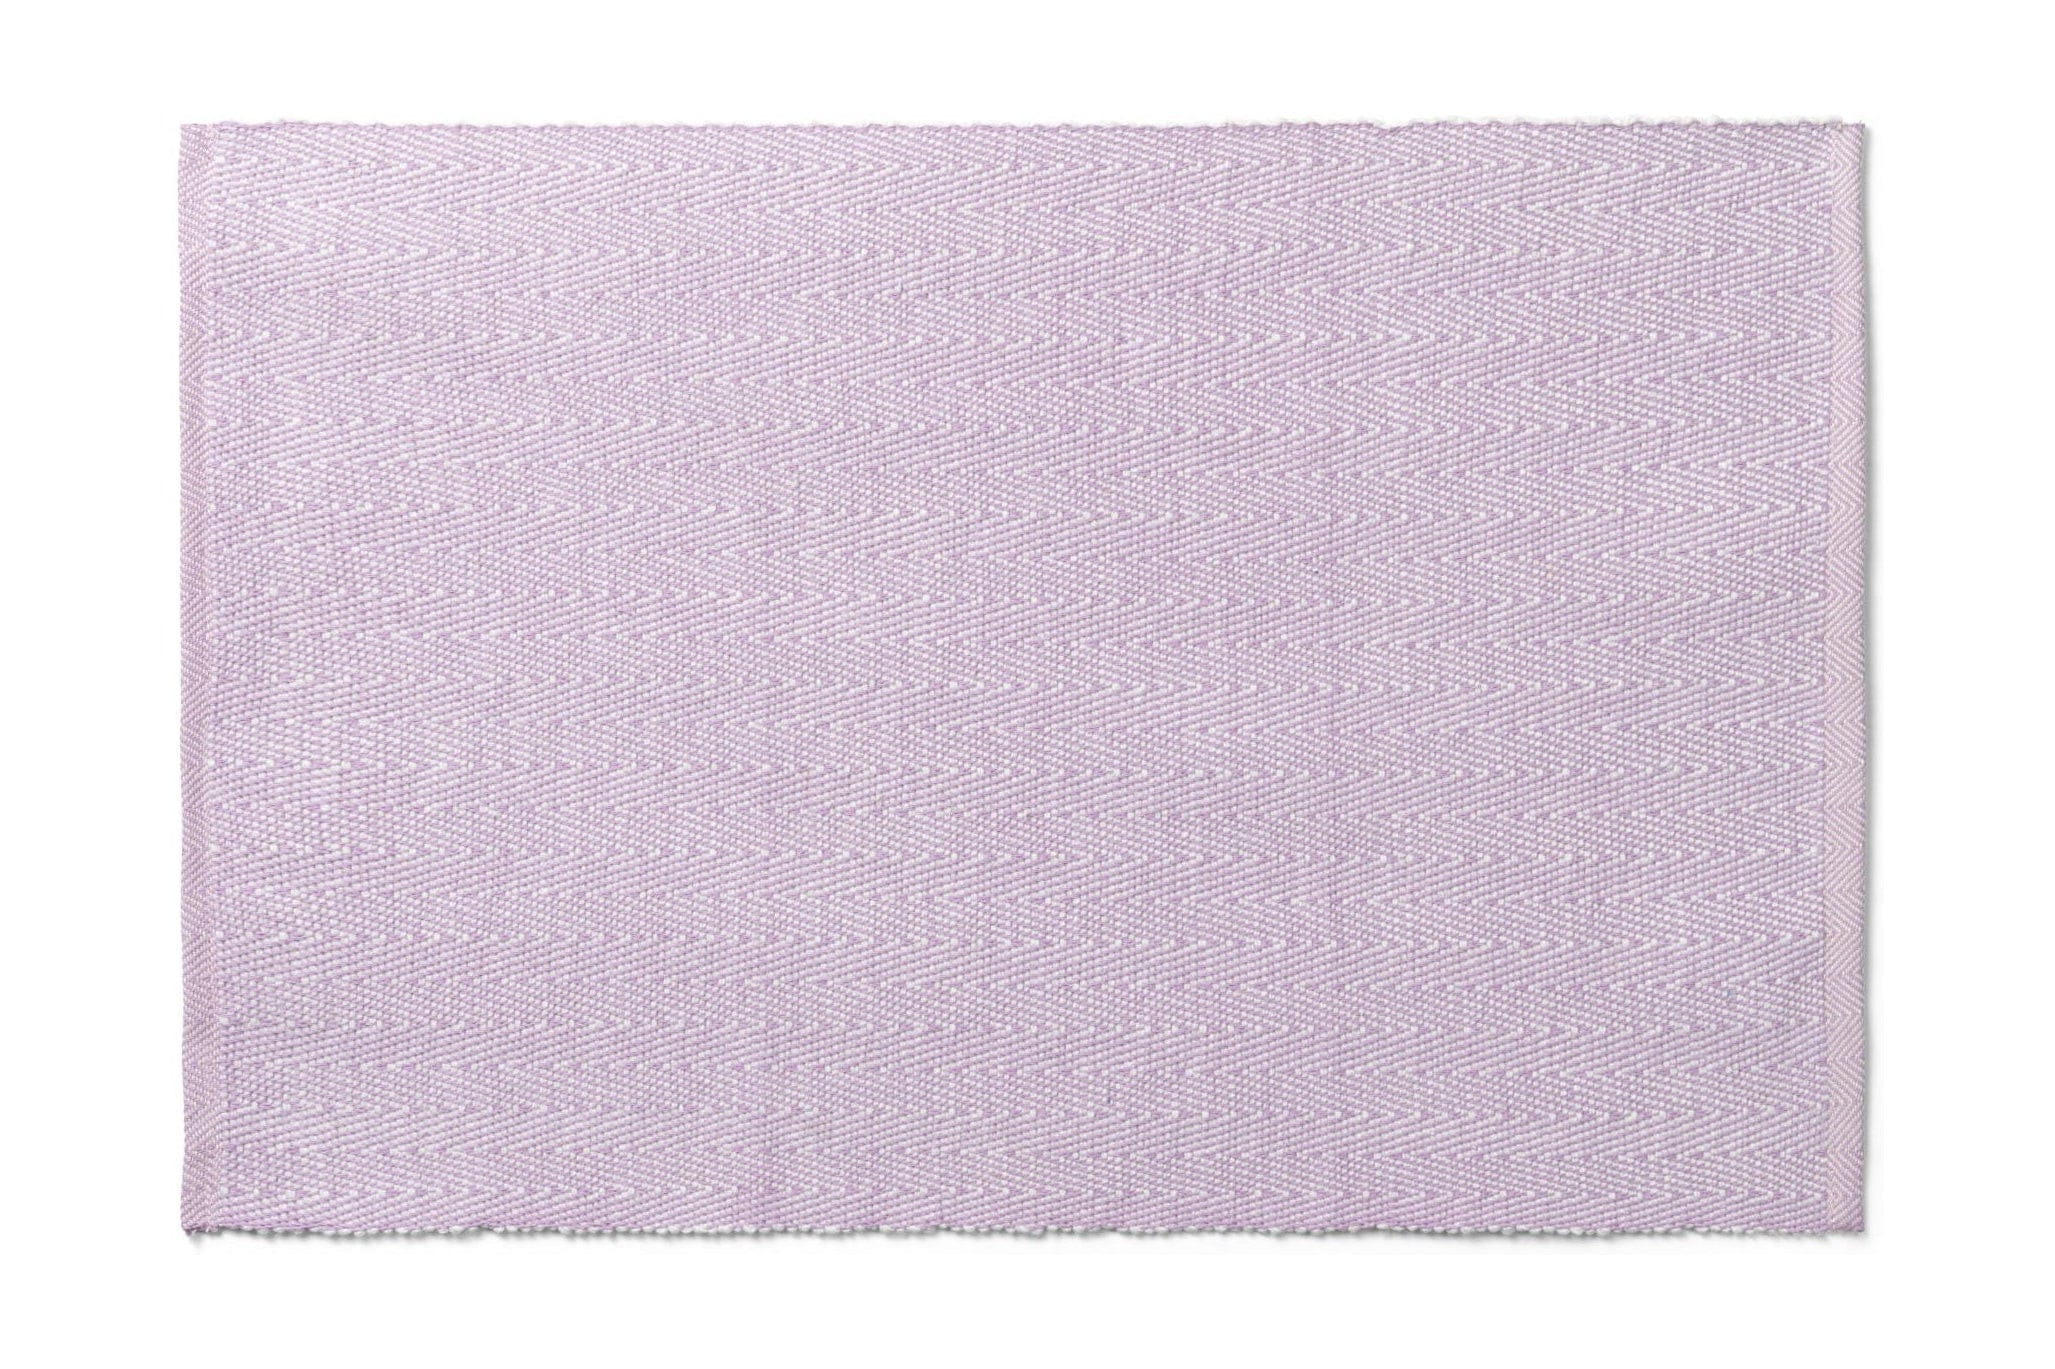 Lyngby Porcelæn Placemat 43x30 cm, paars, paars visgraat